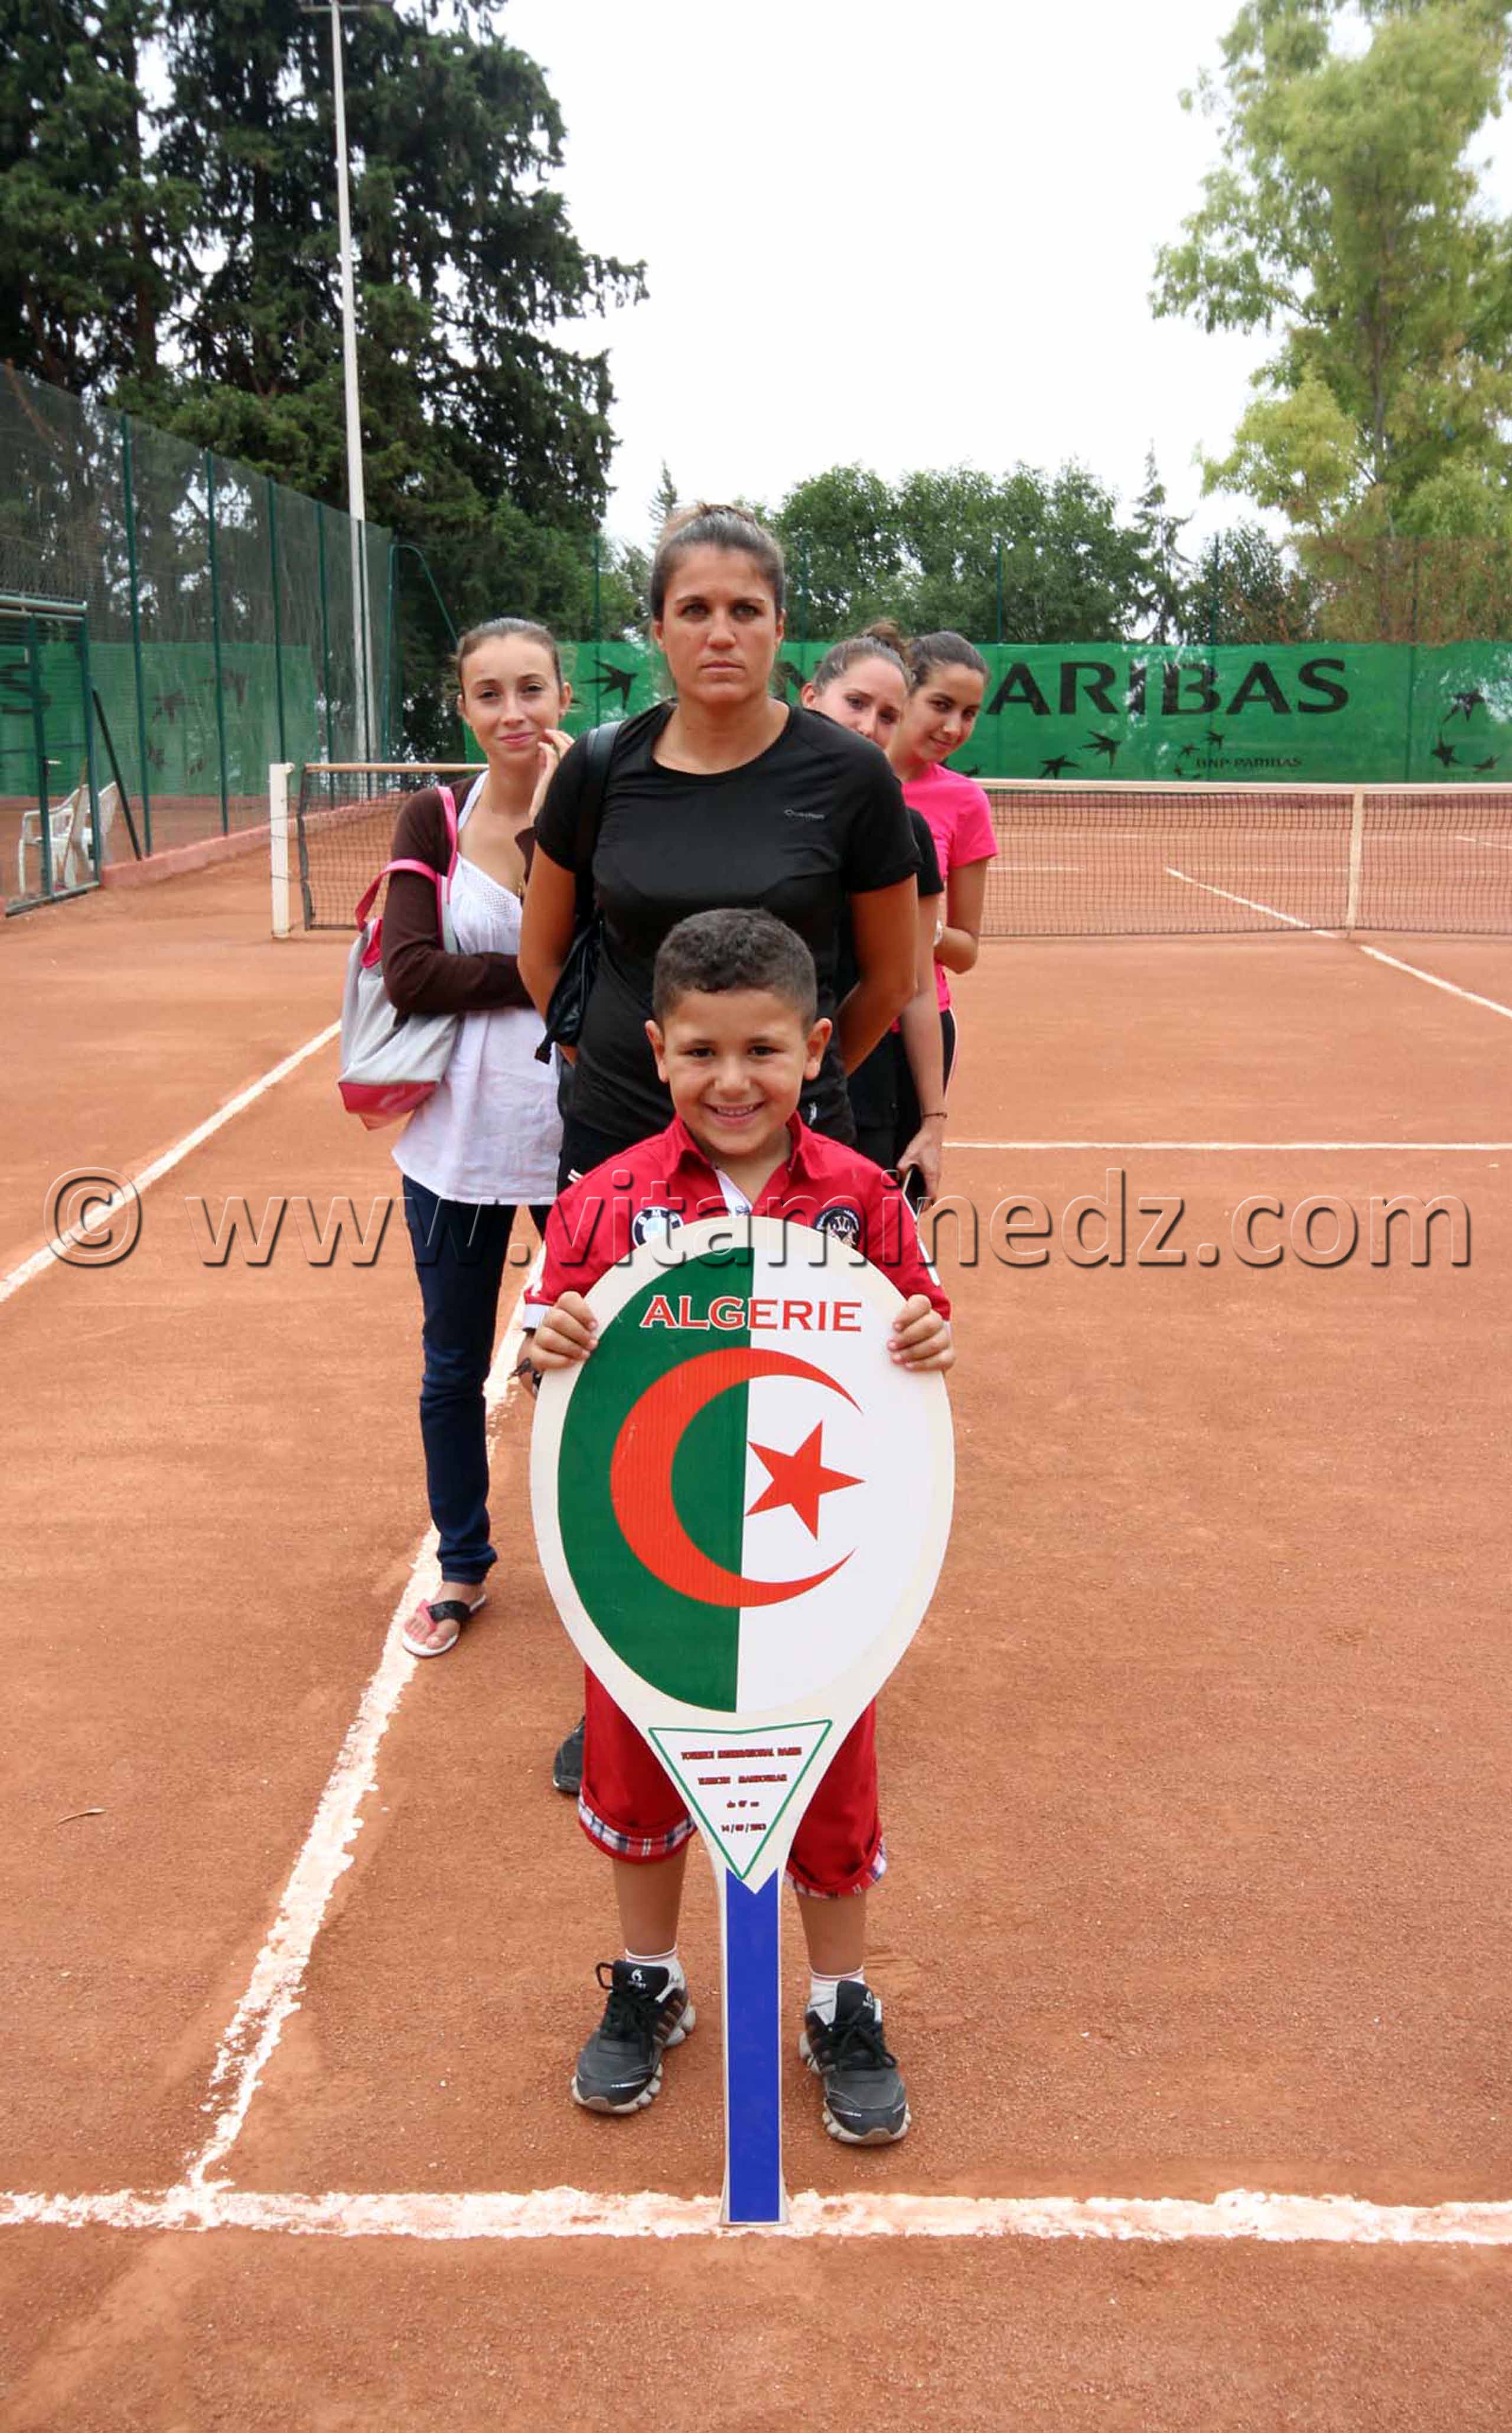 L'equipe Algerienne de Tennis à Tlemcen - Tennis (ITF 2013)  Tournoi international féminin de tennis sur terre battue du 9 au 14 septembre 2013